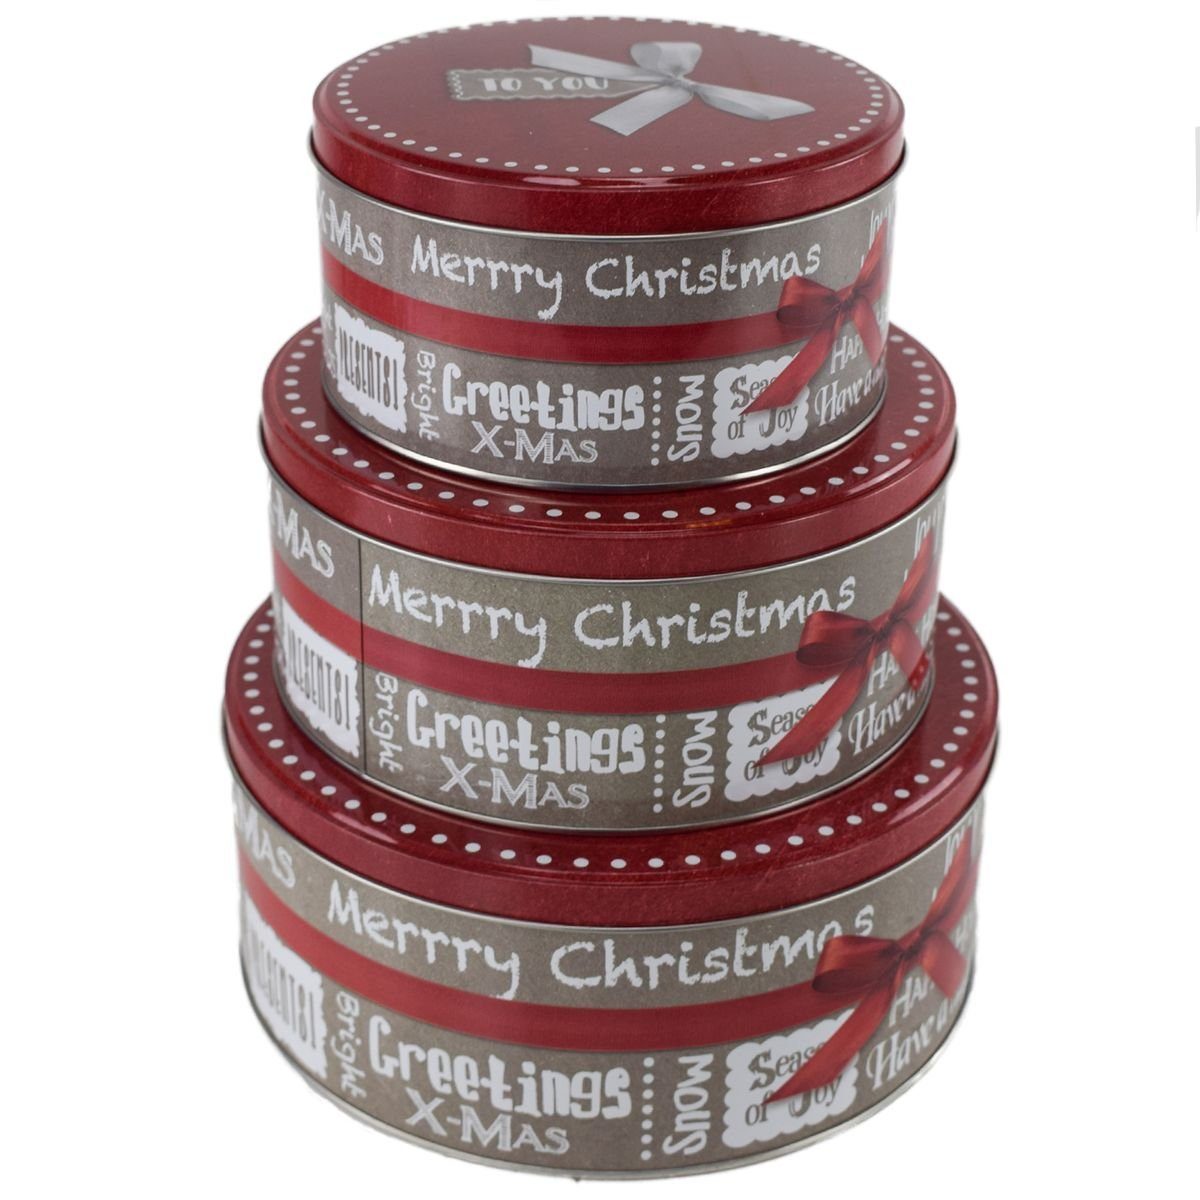 Vorratsdose Metall Keksdosen mit Weihnachtsmotiv im Set mit 3 verschiedenen Größen, Metall, festlich gestaltet